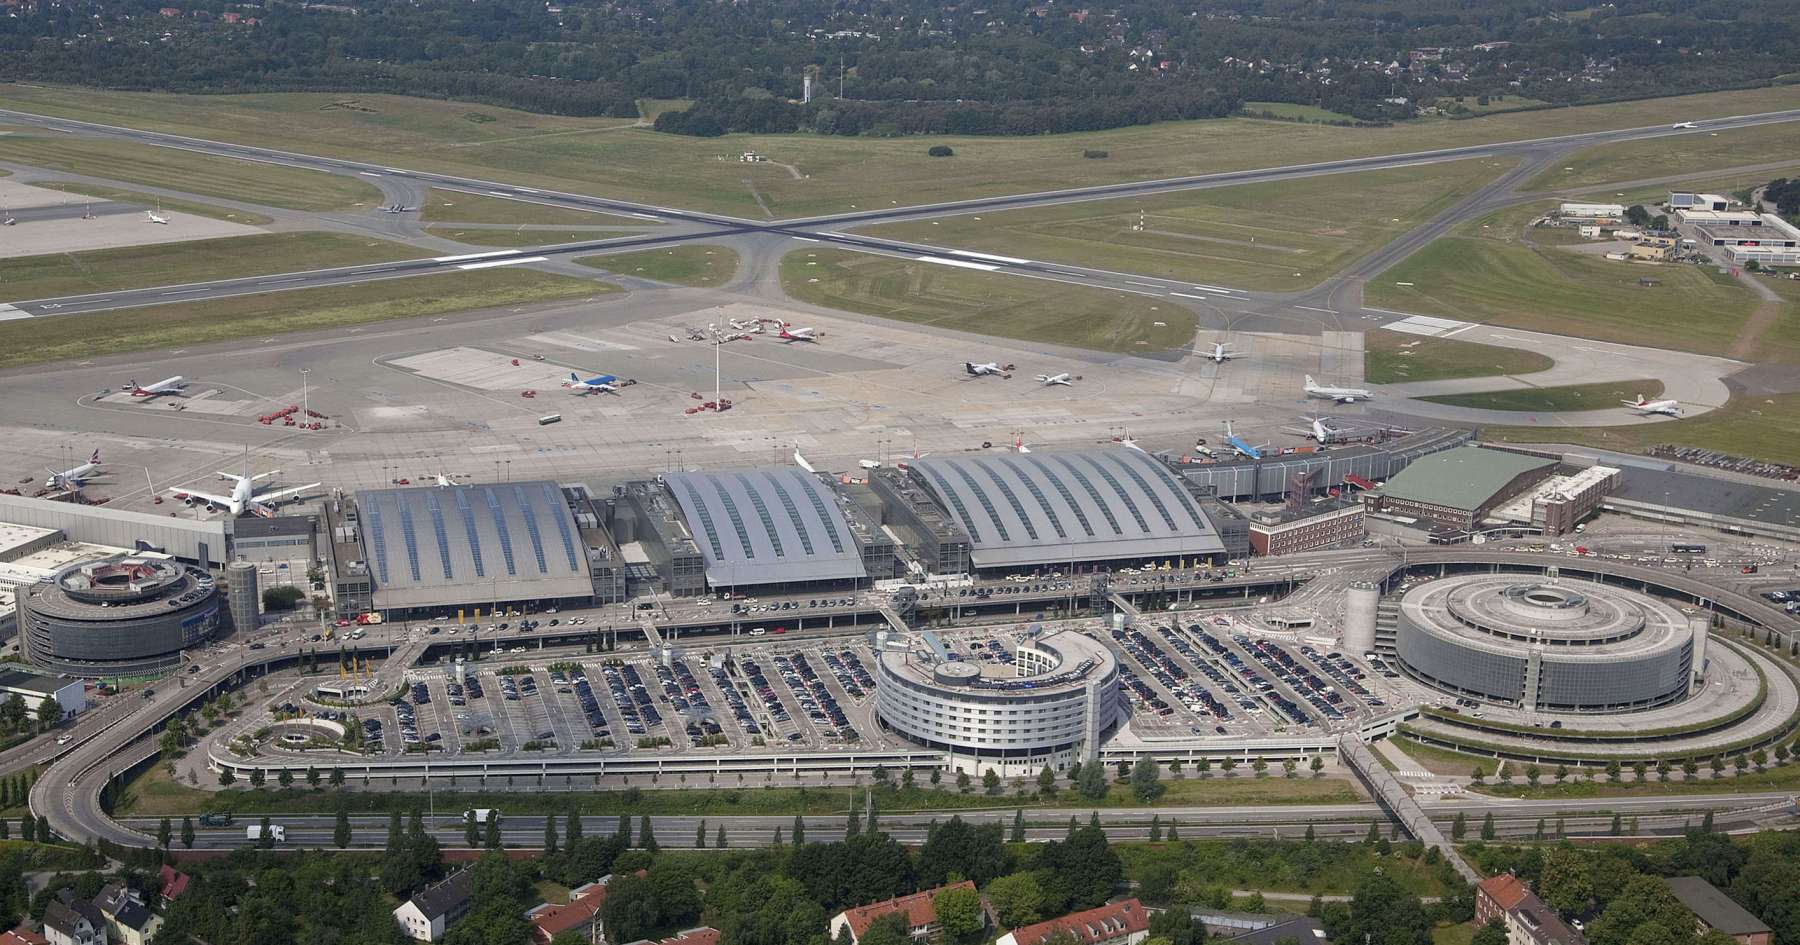 Flughafen Hamburg. Nützliche Informationen zum Flughafen